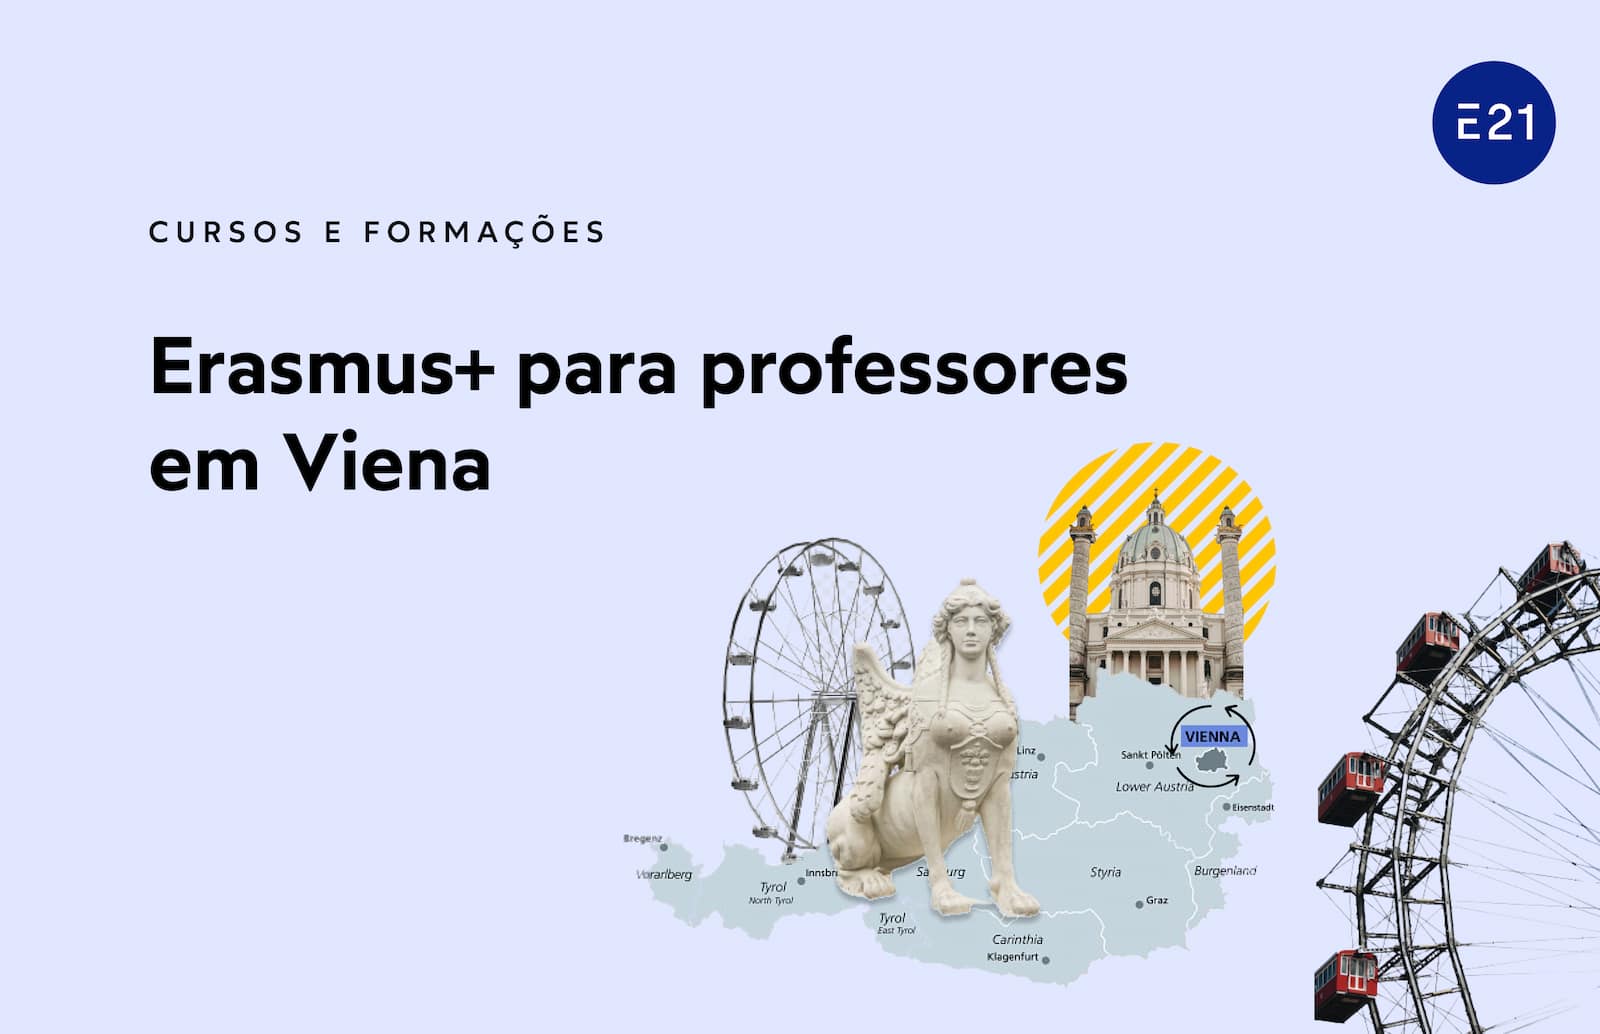 Erasmus+ para professores em Viena